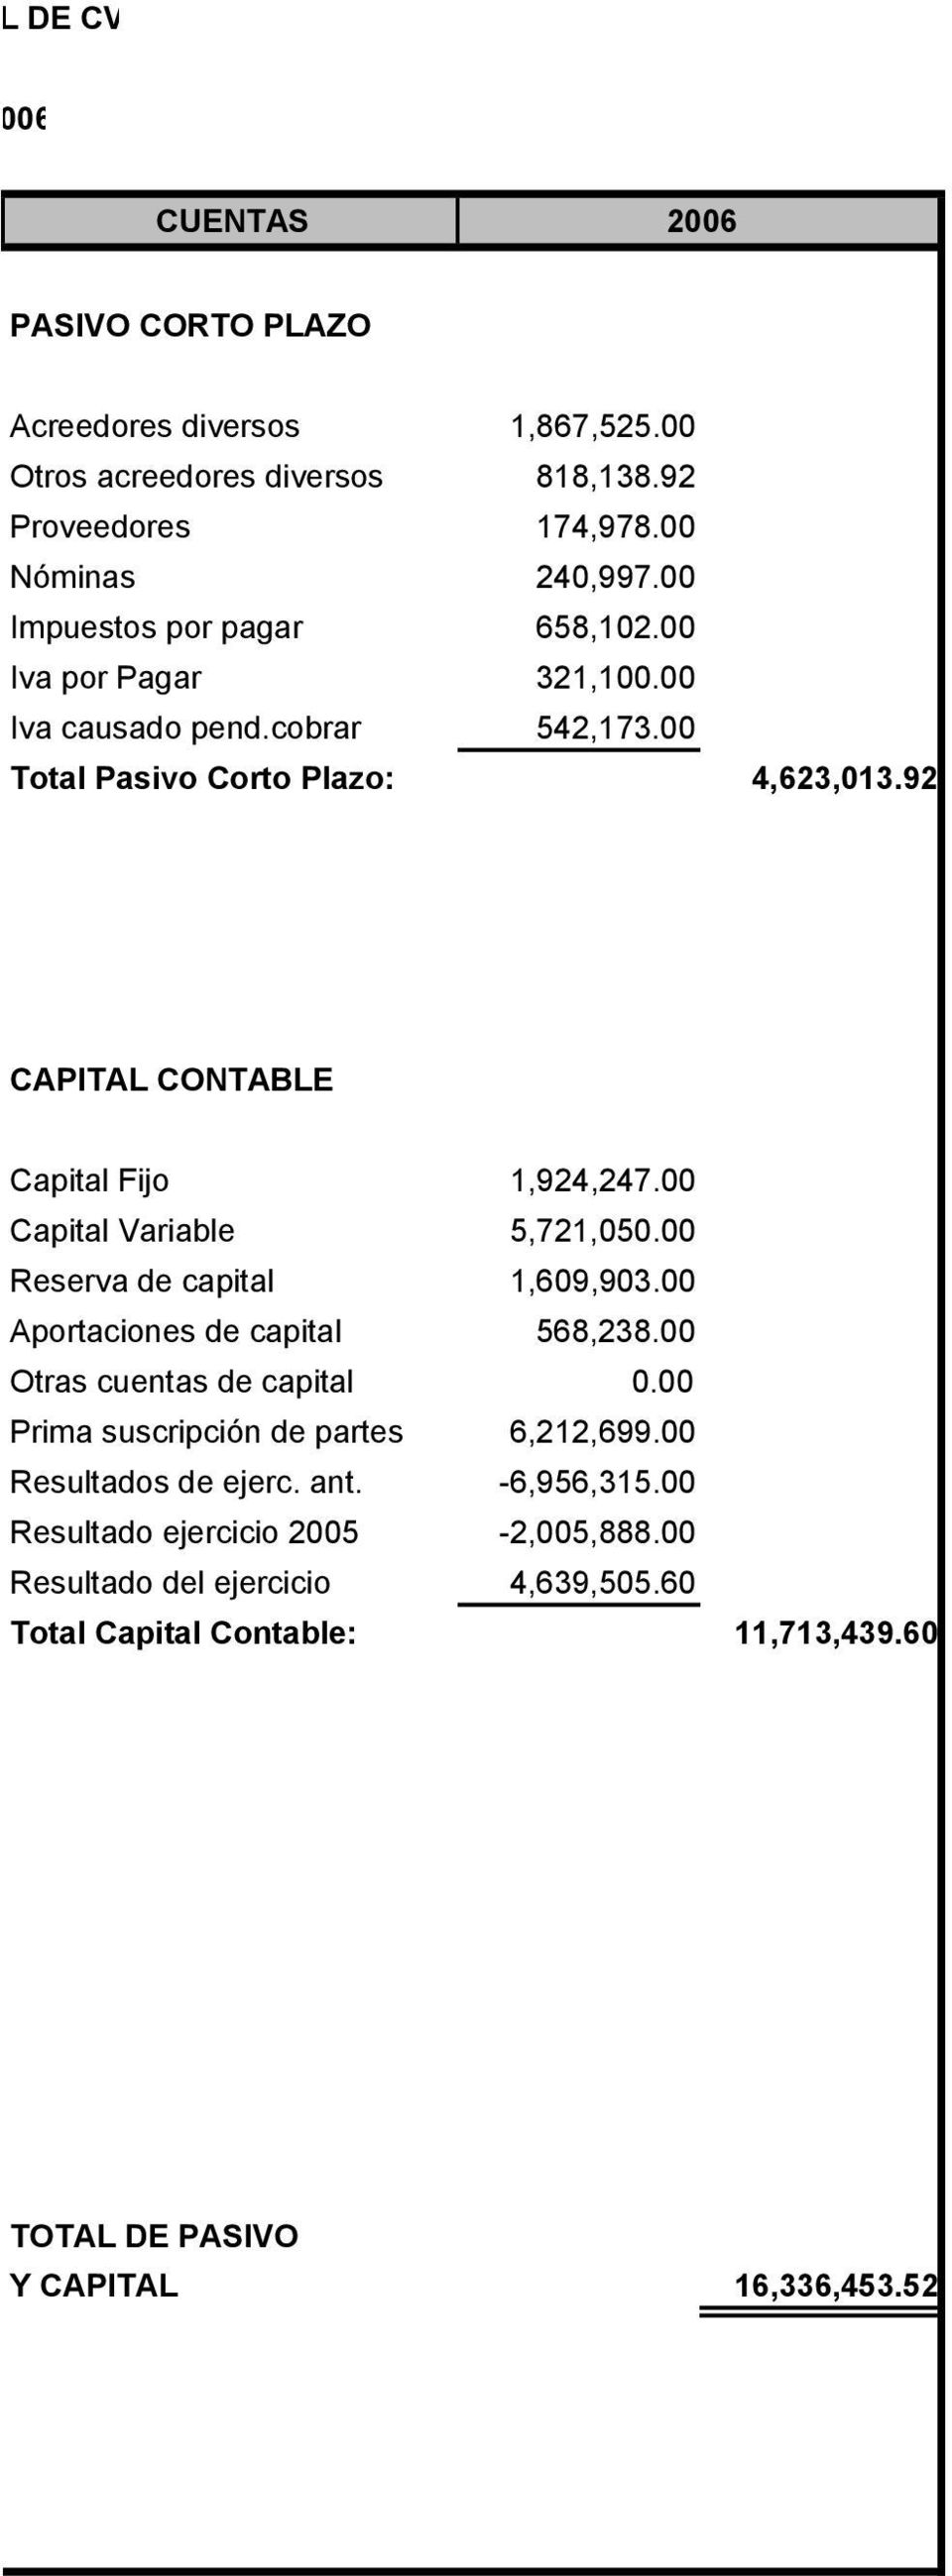 00 Capital Variable 5,721,050.00 Reserva de capital 1,609,903.00 Aportaciones de capital 568,238.00 Otras cuentas de capital 0.